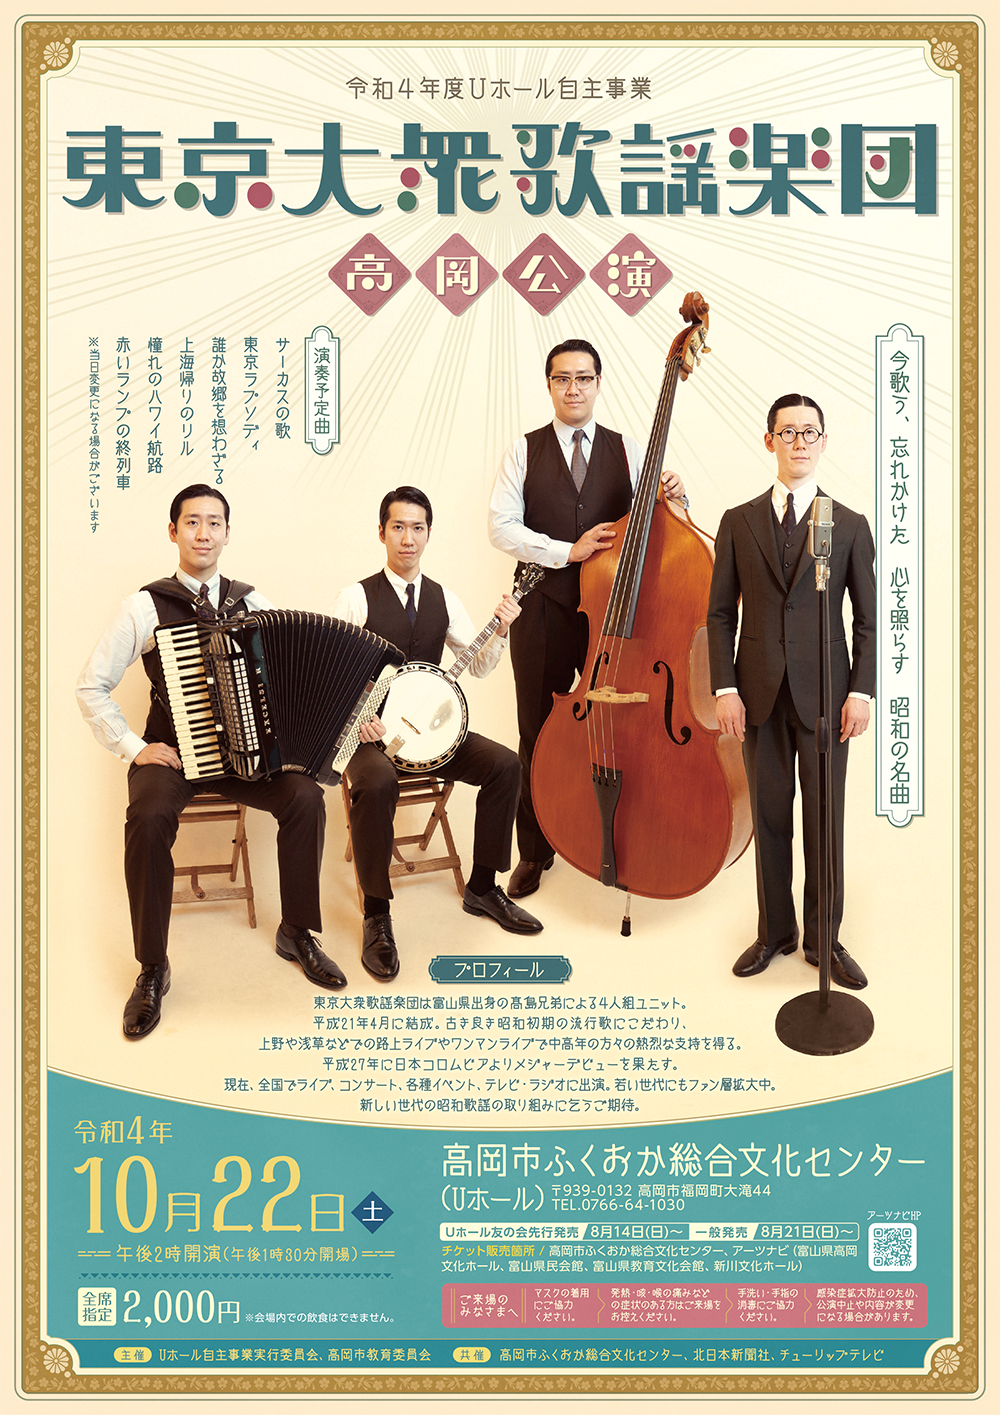 Uホール様「東京大衆歌謡楽団 高岡公演」のポスターとチラシです。昭和レトロの雰囲気で制作しました。